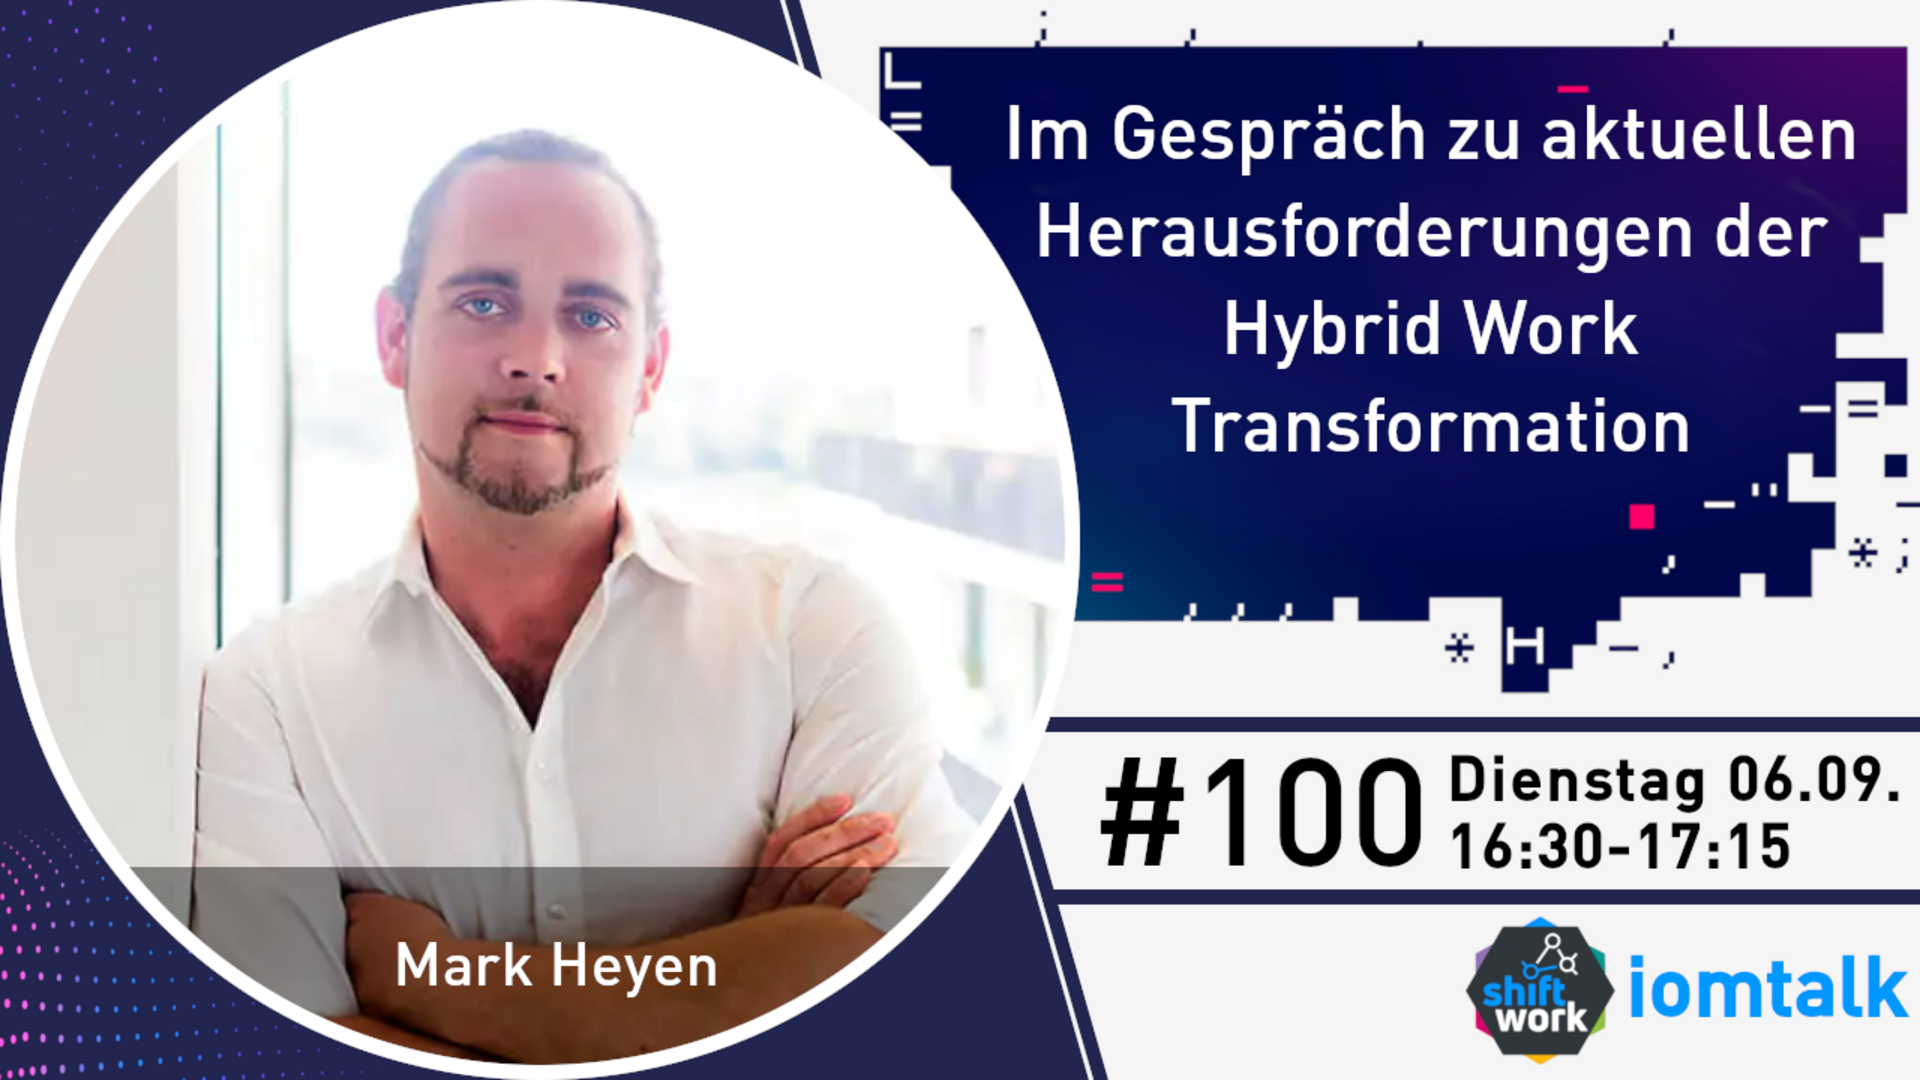 Im Gespräch mit Mark Heyen zu den aktuellen Herausforderungen der Hybrid Work Transformation